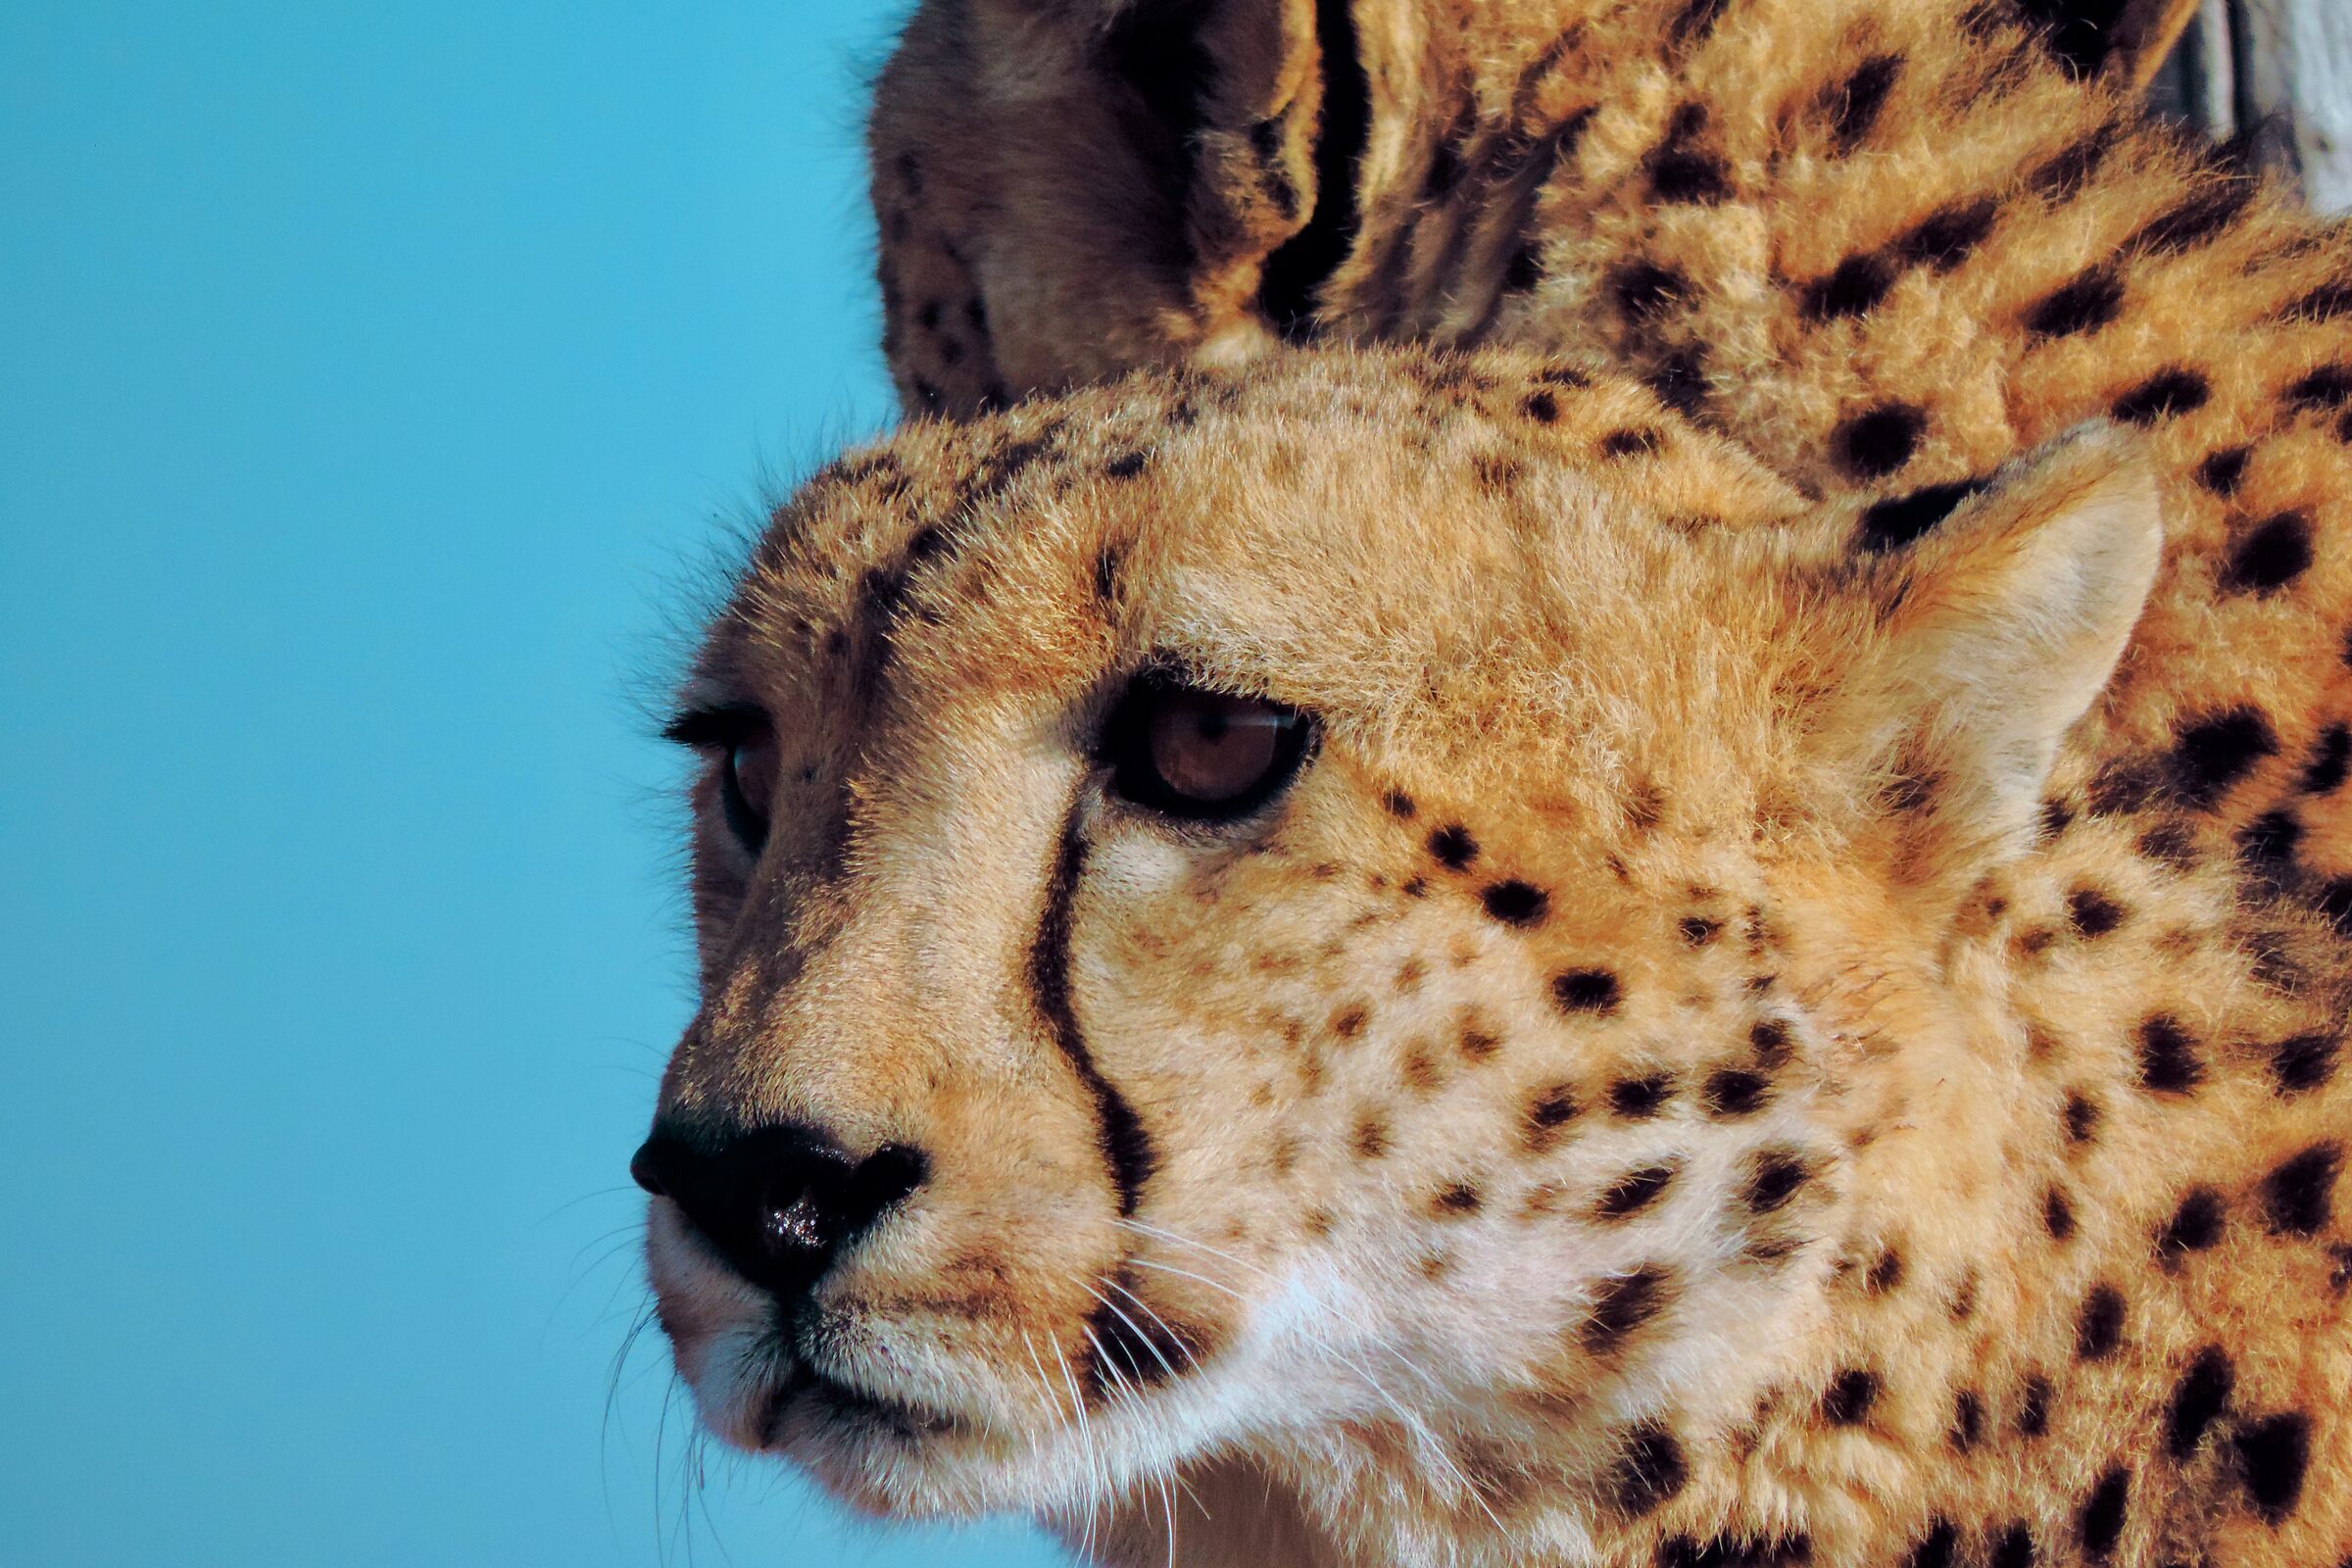 Cheetah - South Africa...